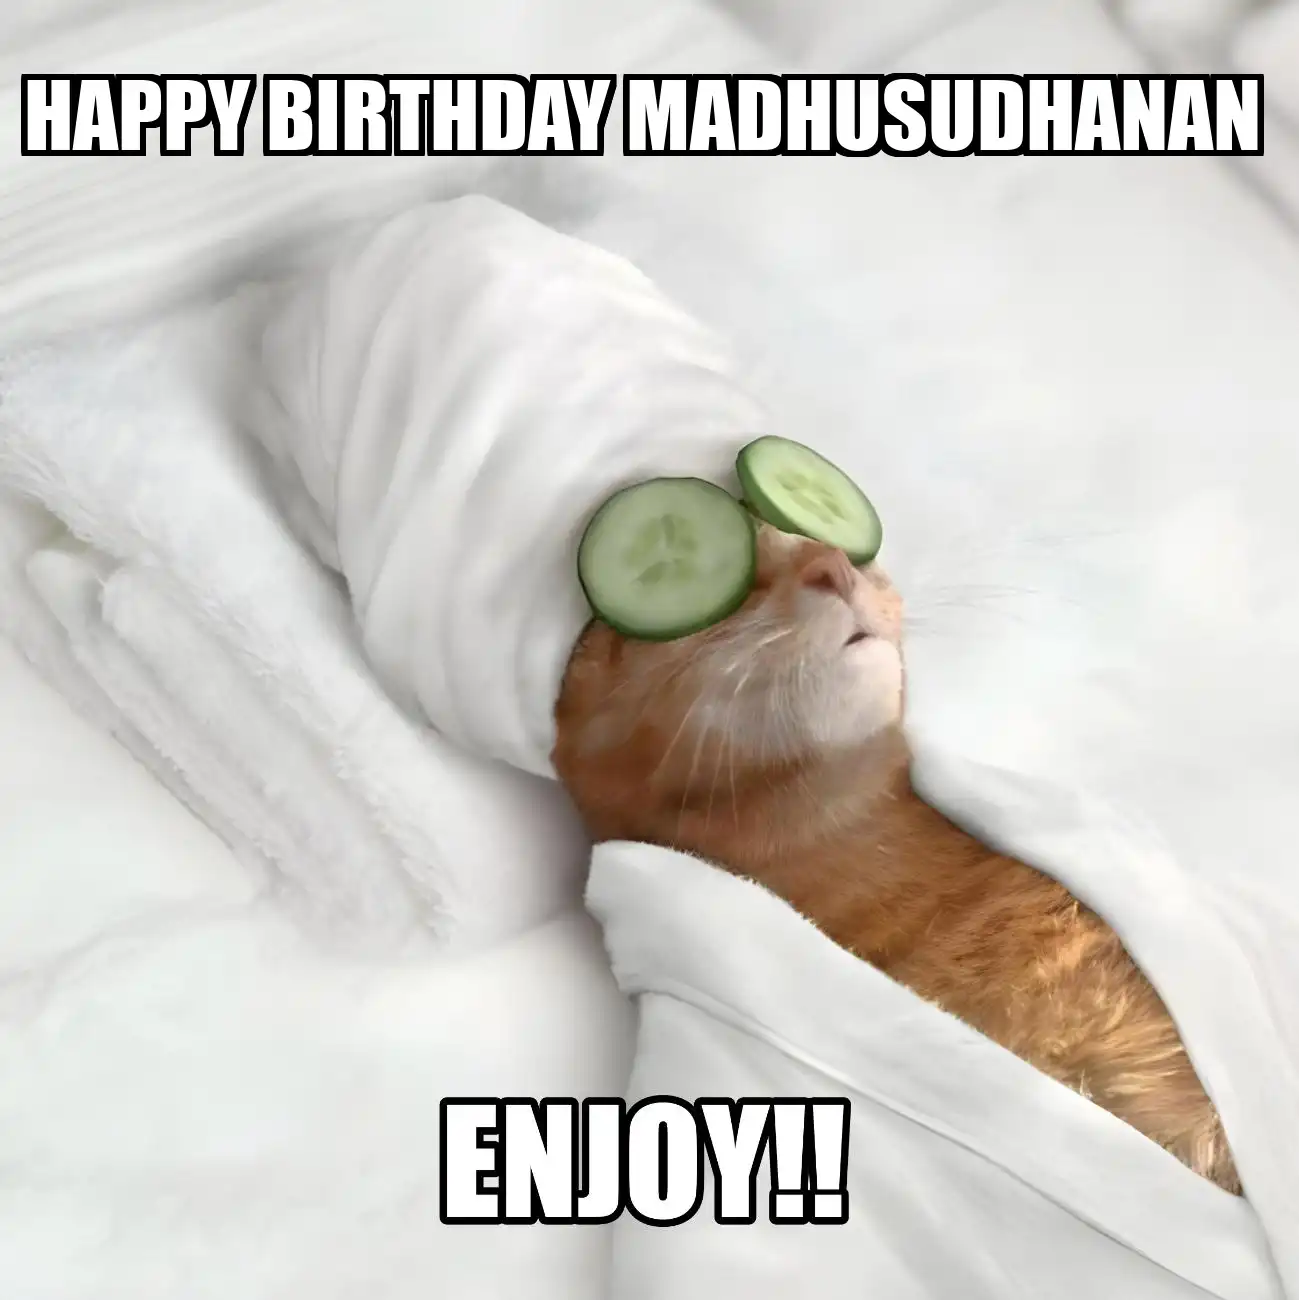 Happy Birthday Madhusudhanan Enjoy Cat Meme